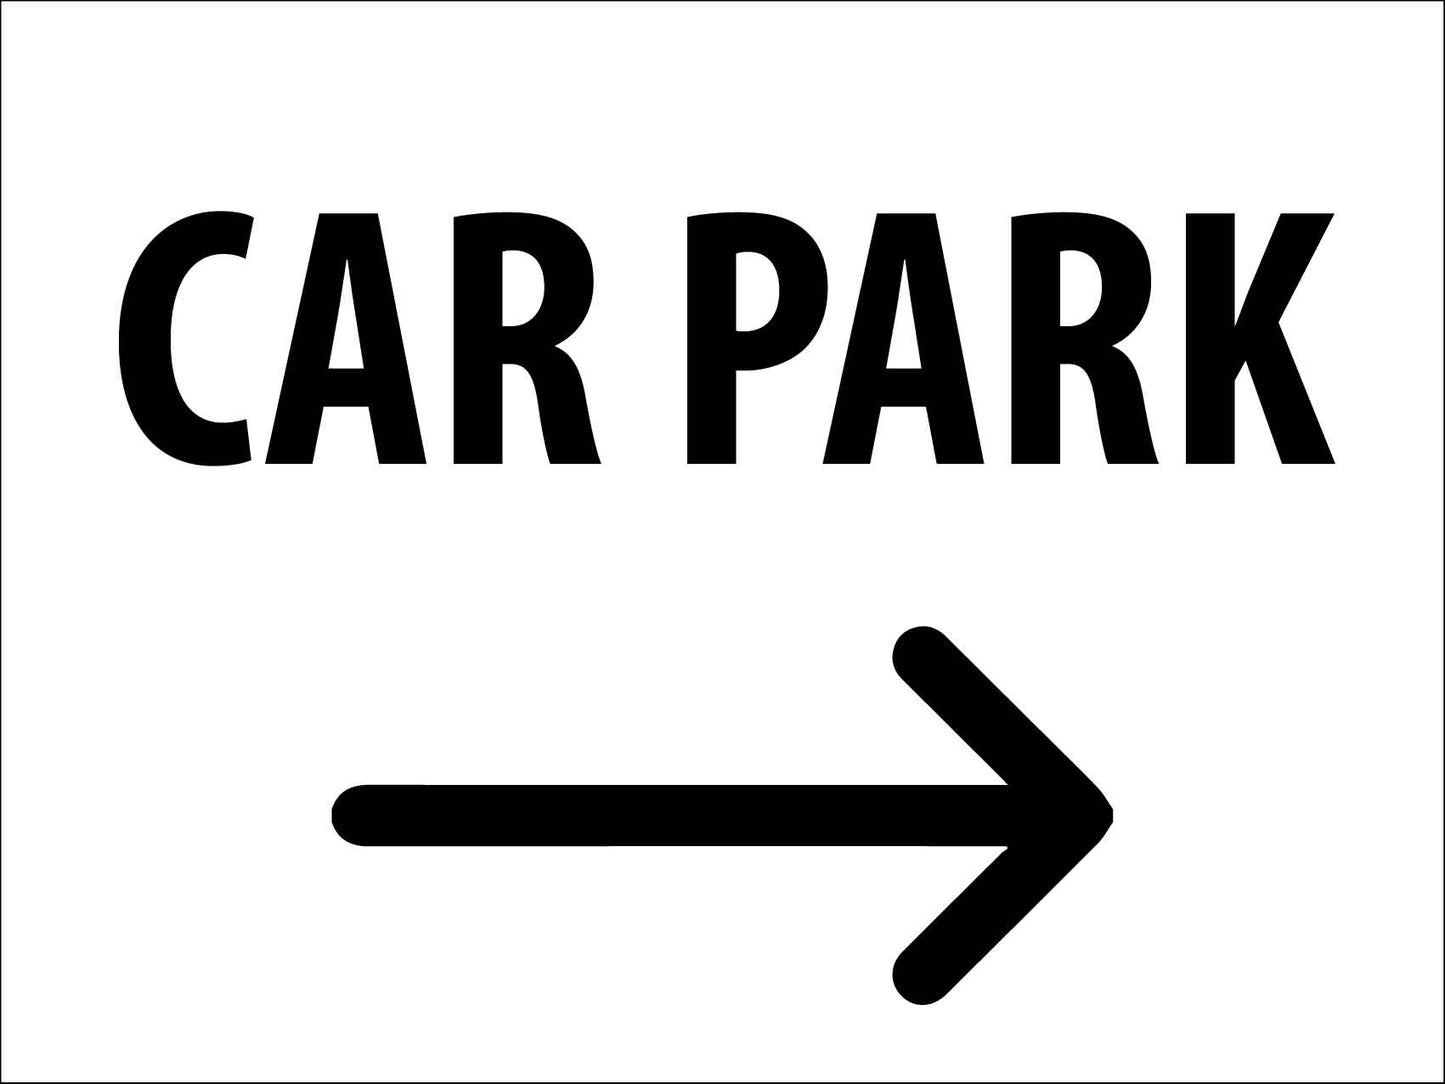 Car Park (Right Arrow) Sign